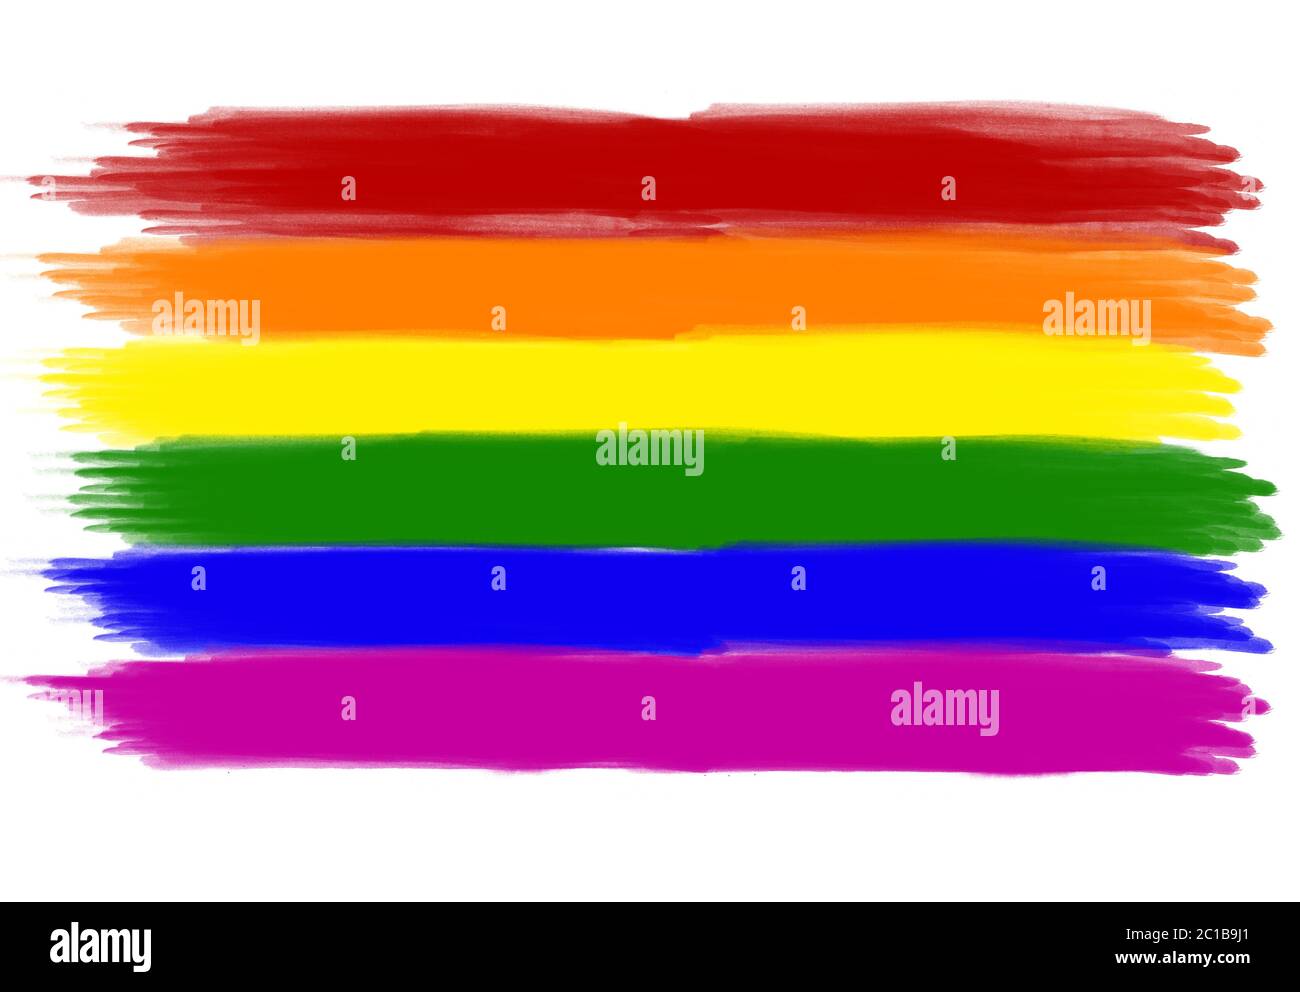 Peinture de couleur LGBTQI avec aquarelle sur toile, texture colorée créative avec couleurs pastel arrière-plan abstrait - image Banque D'Images